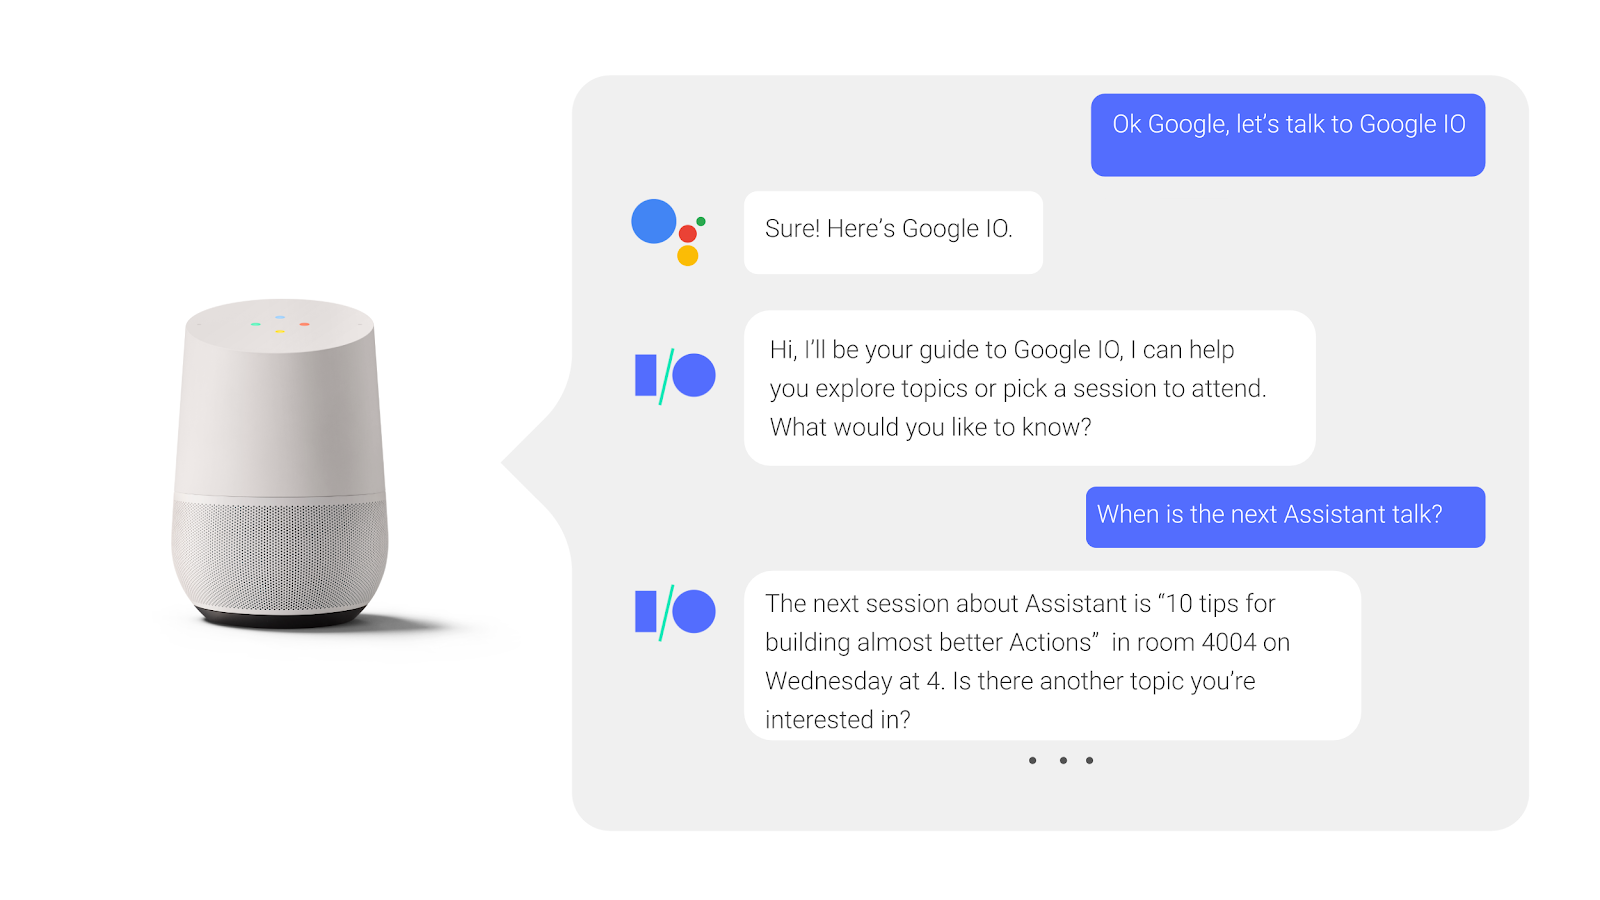 בשיחה עם הלוך ושוב עם Google Assistant, המשתמש שואל על מה שקרה ומקבל תשובה כשמתרחשת שיחת ועידה.